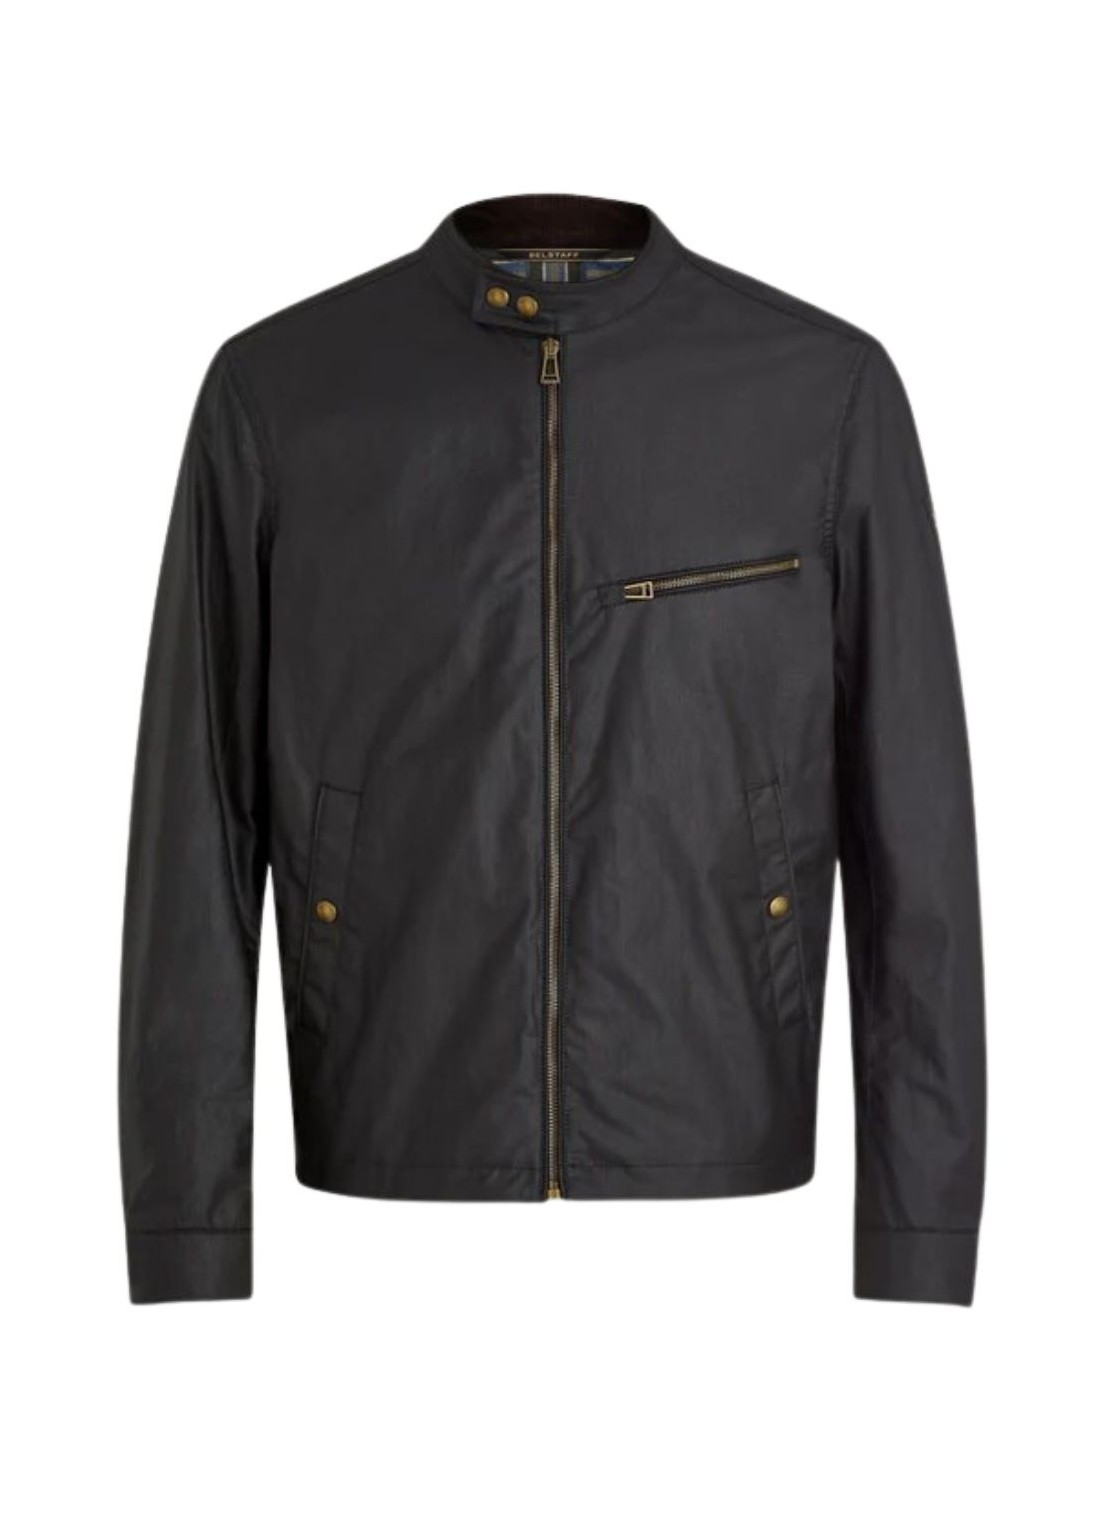 Outerwear belstaff outerwear man walkham jacket 104434 black talla 54
 